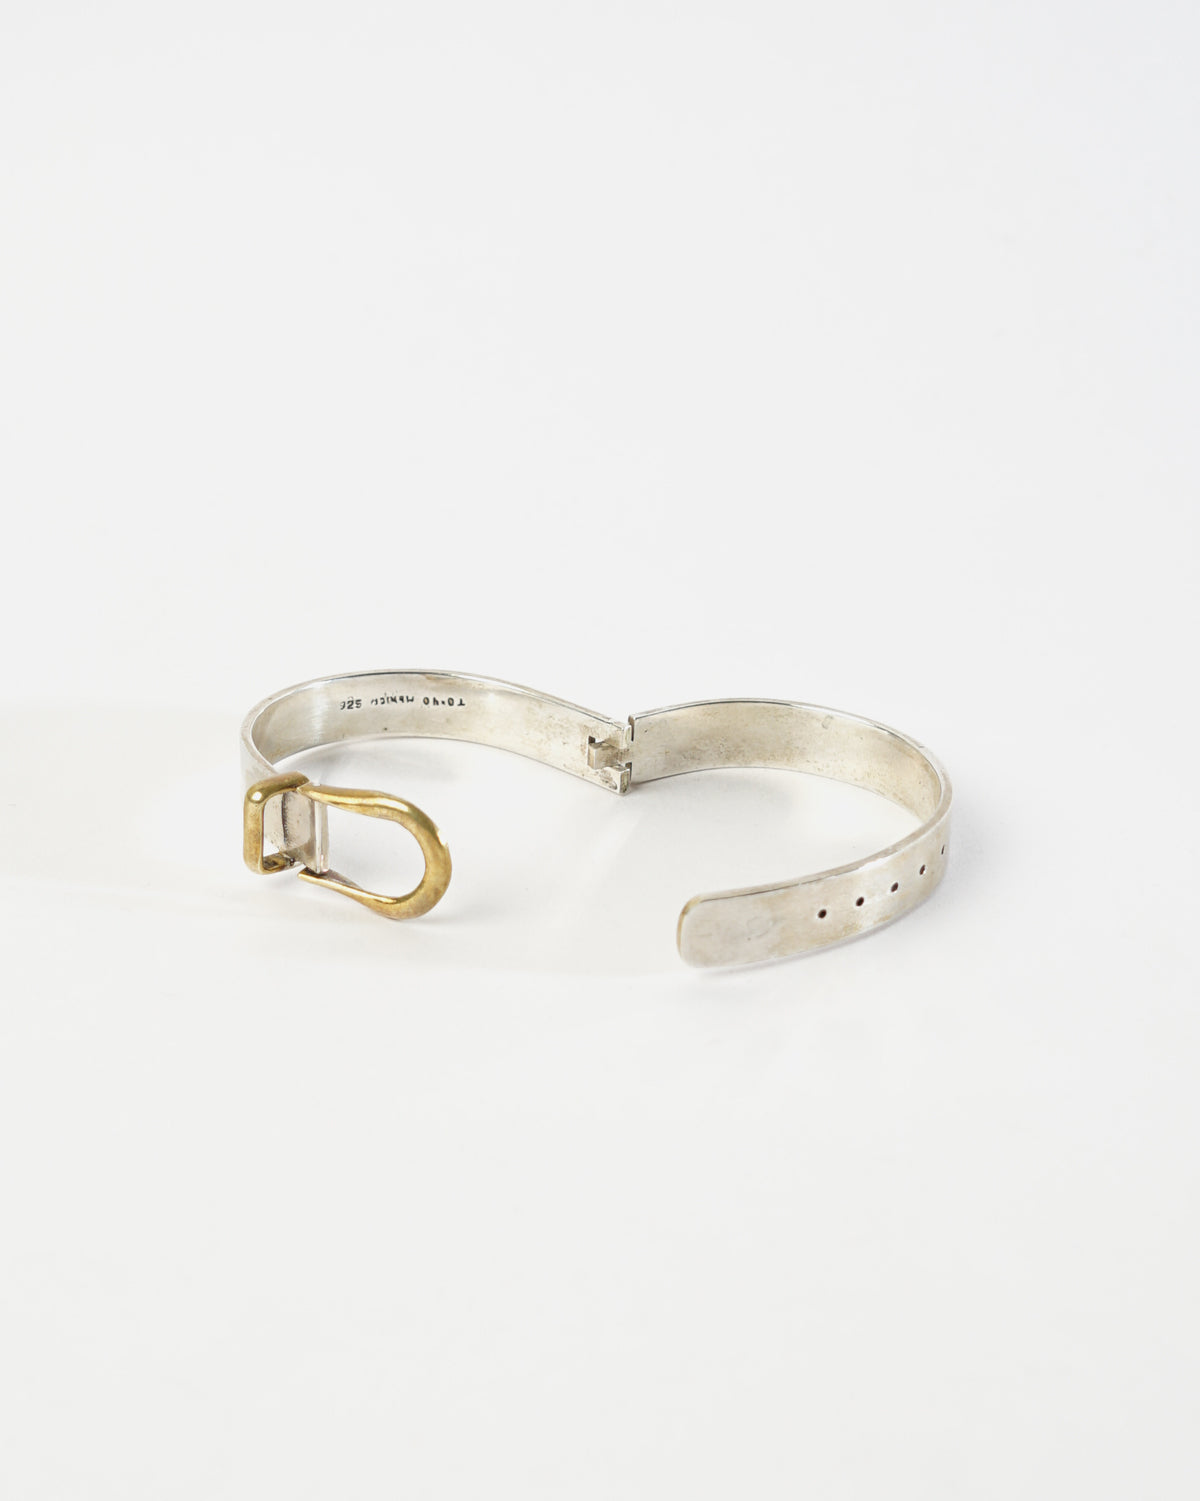 Silver x Brass Belt Cuff Bracelet